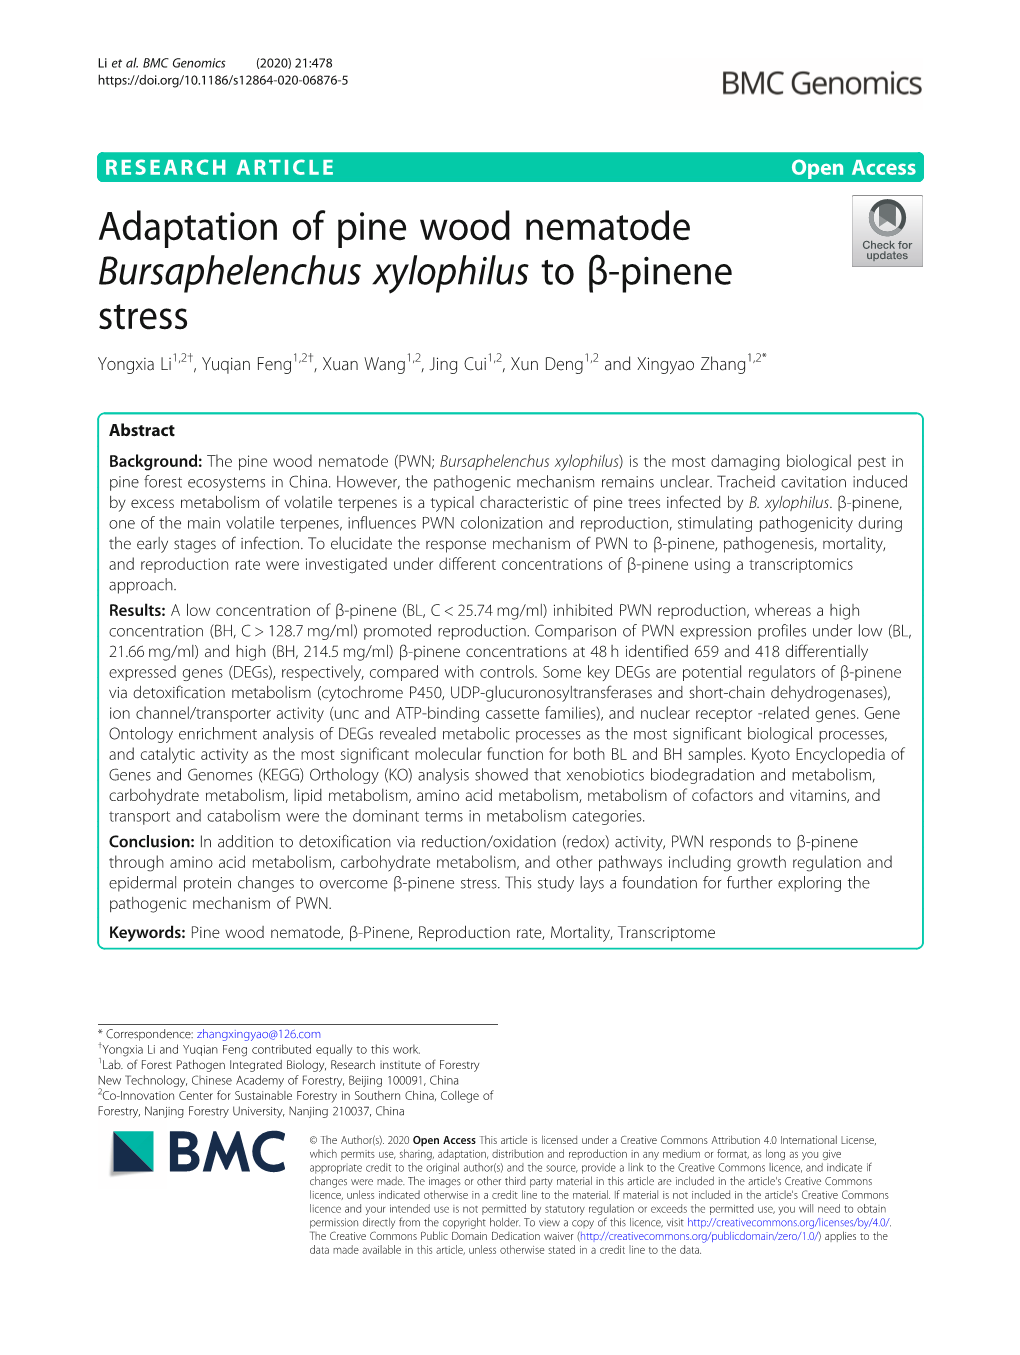 Adaptation of Pine Wood Nematode Bursaphelenchus Xylophilus to Β